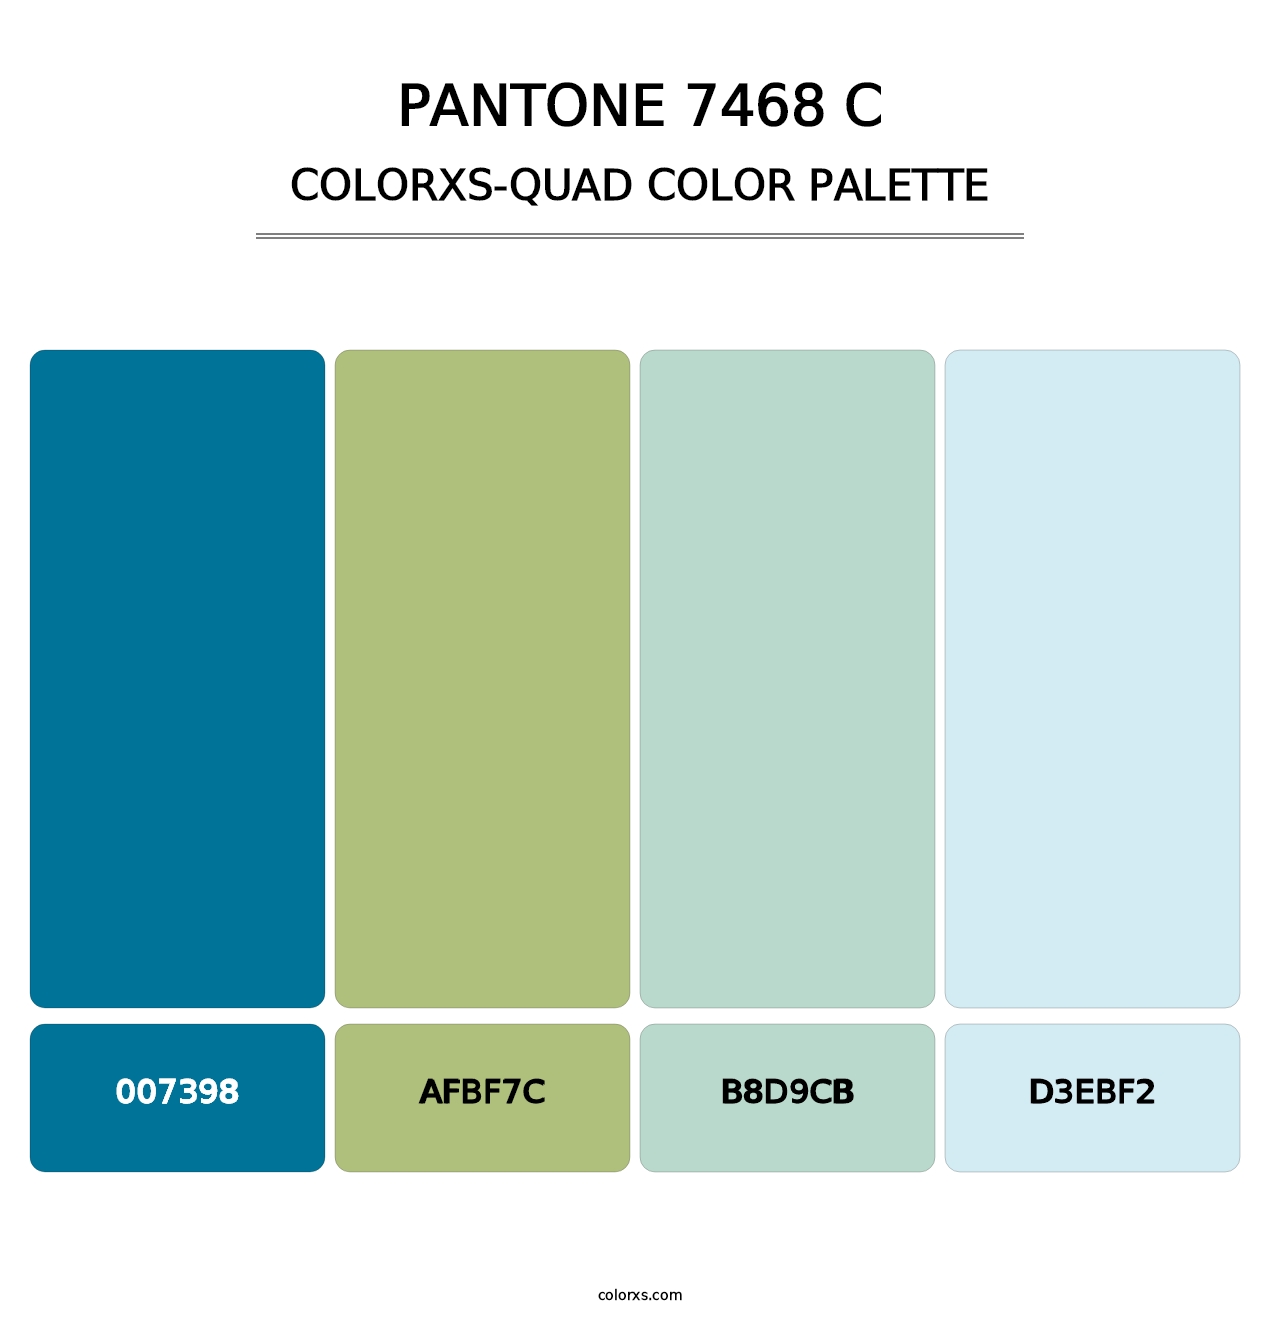 PANTONE 7468 C - Colorxs Quad Palette